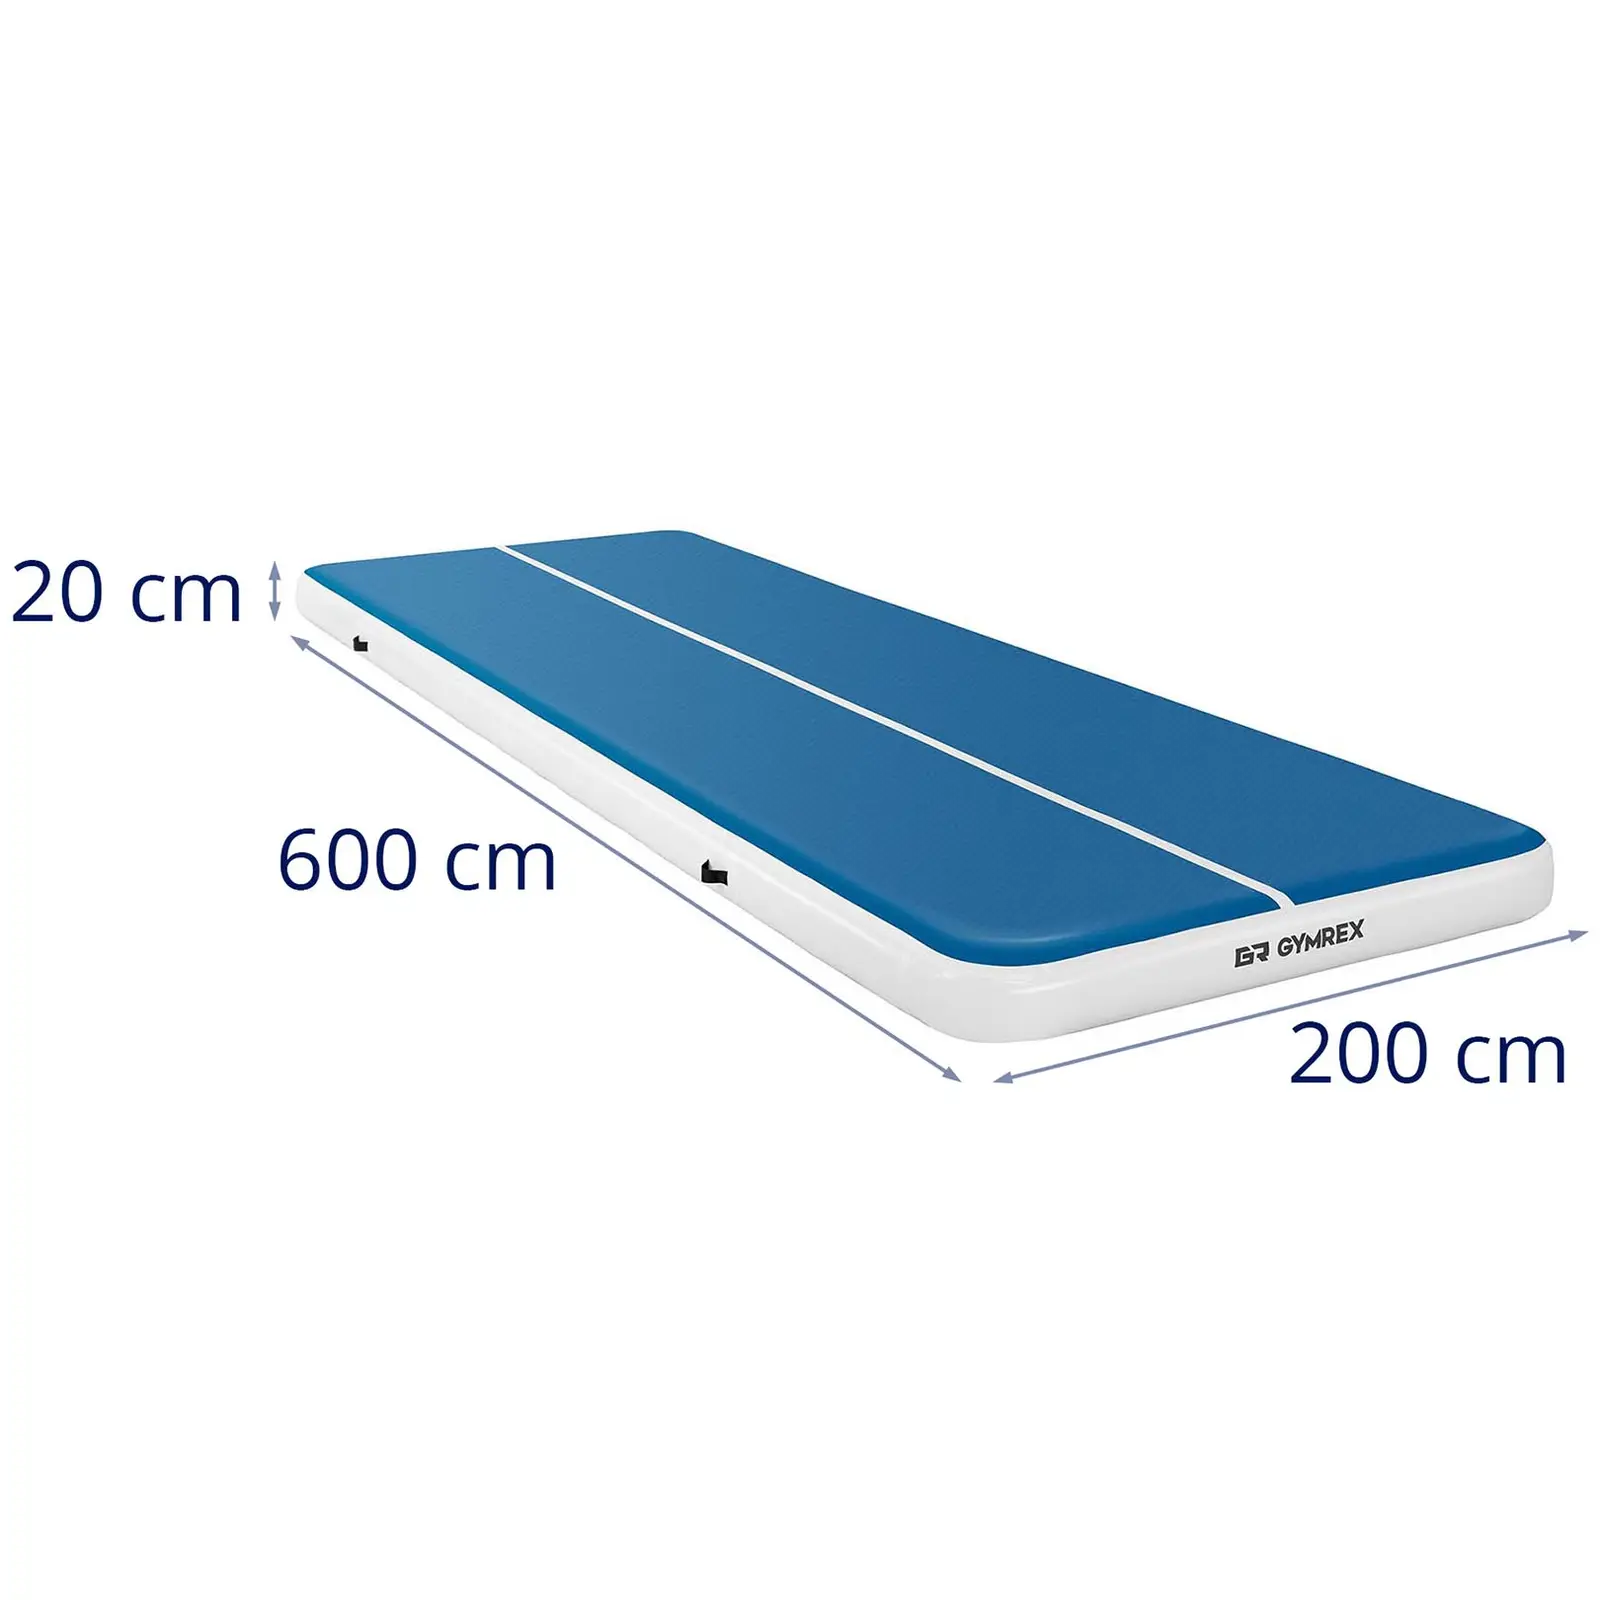 Napihljiva podloga za telovadbo - 600 x 200 x 20 cm - 400 kg - modra/bela